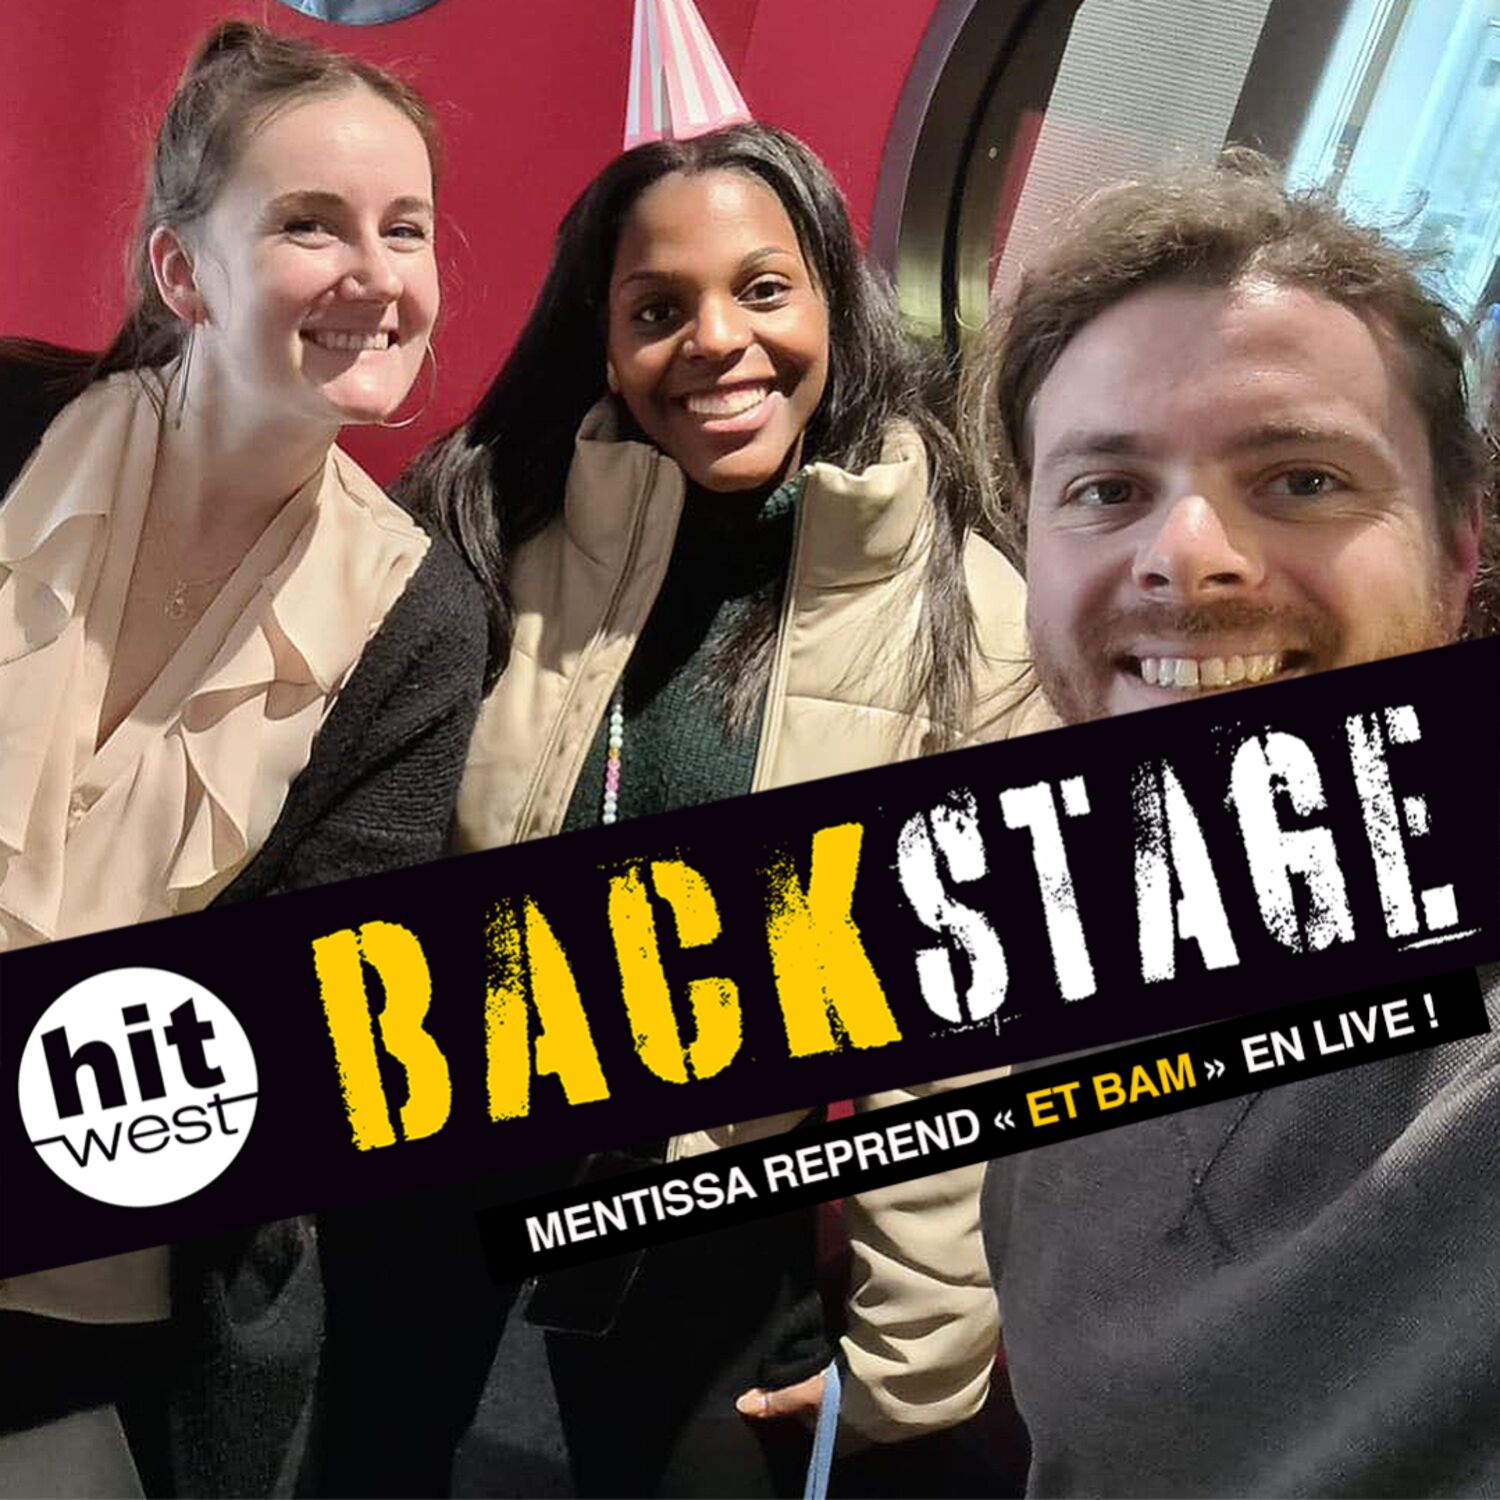 Mentissa reprend "Et Bam" dans Backstage